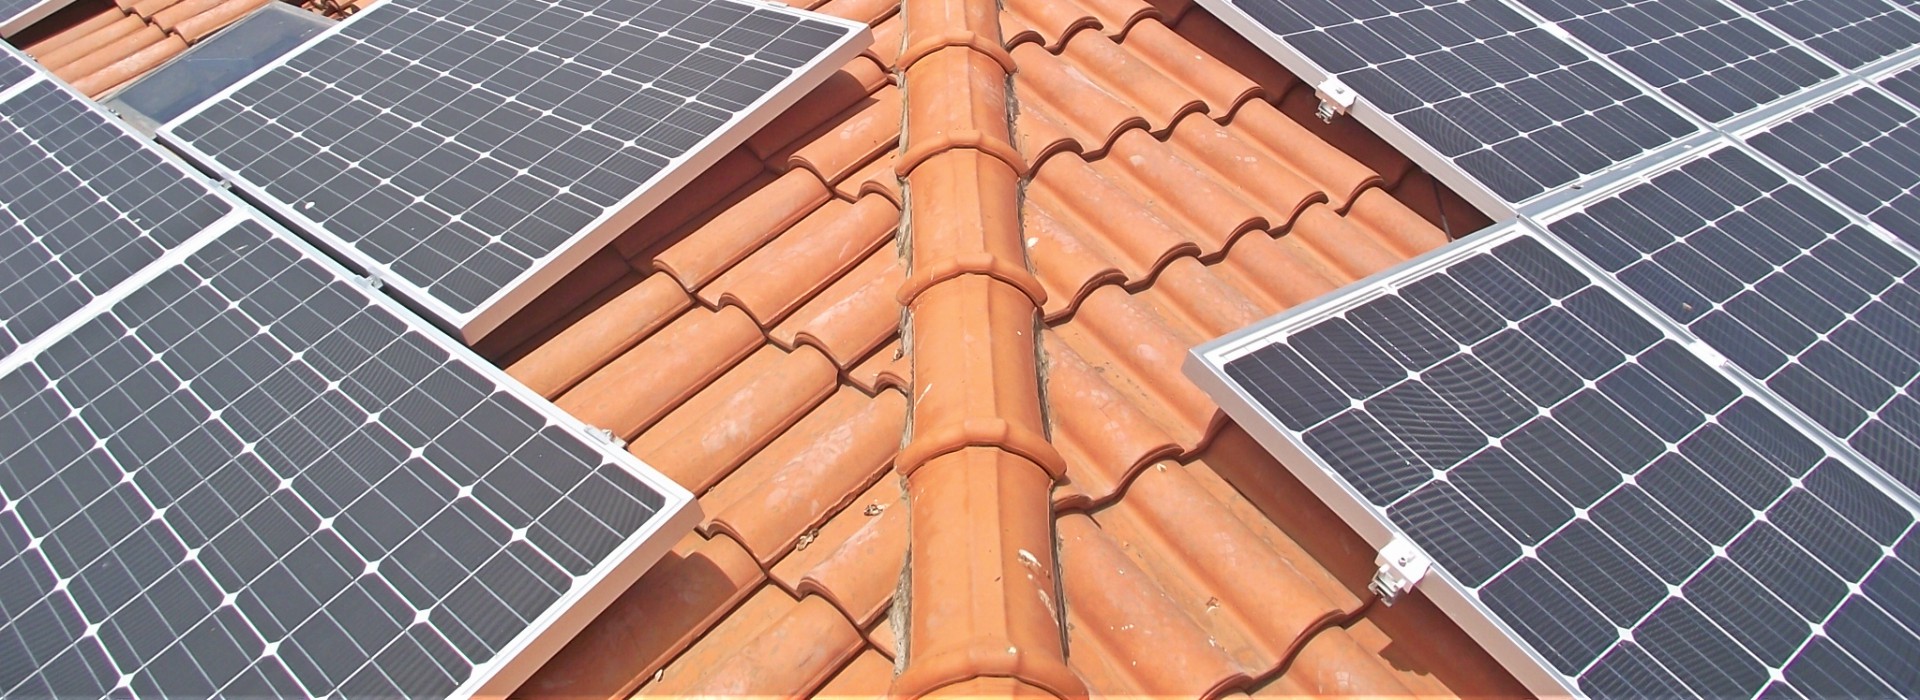 modules photovoltaïques sur le toit